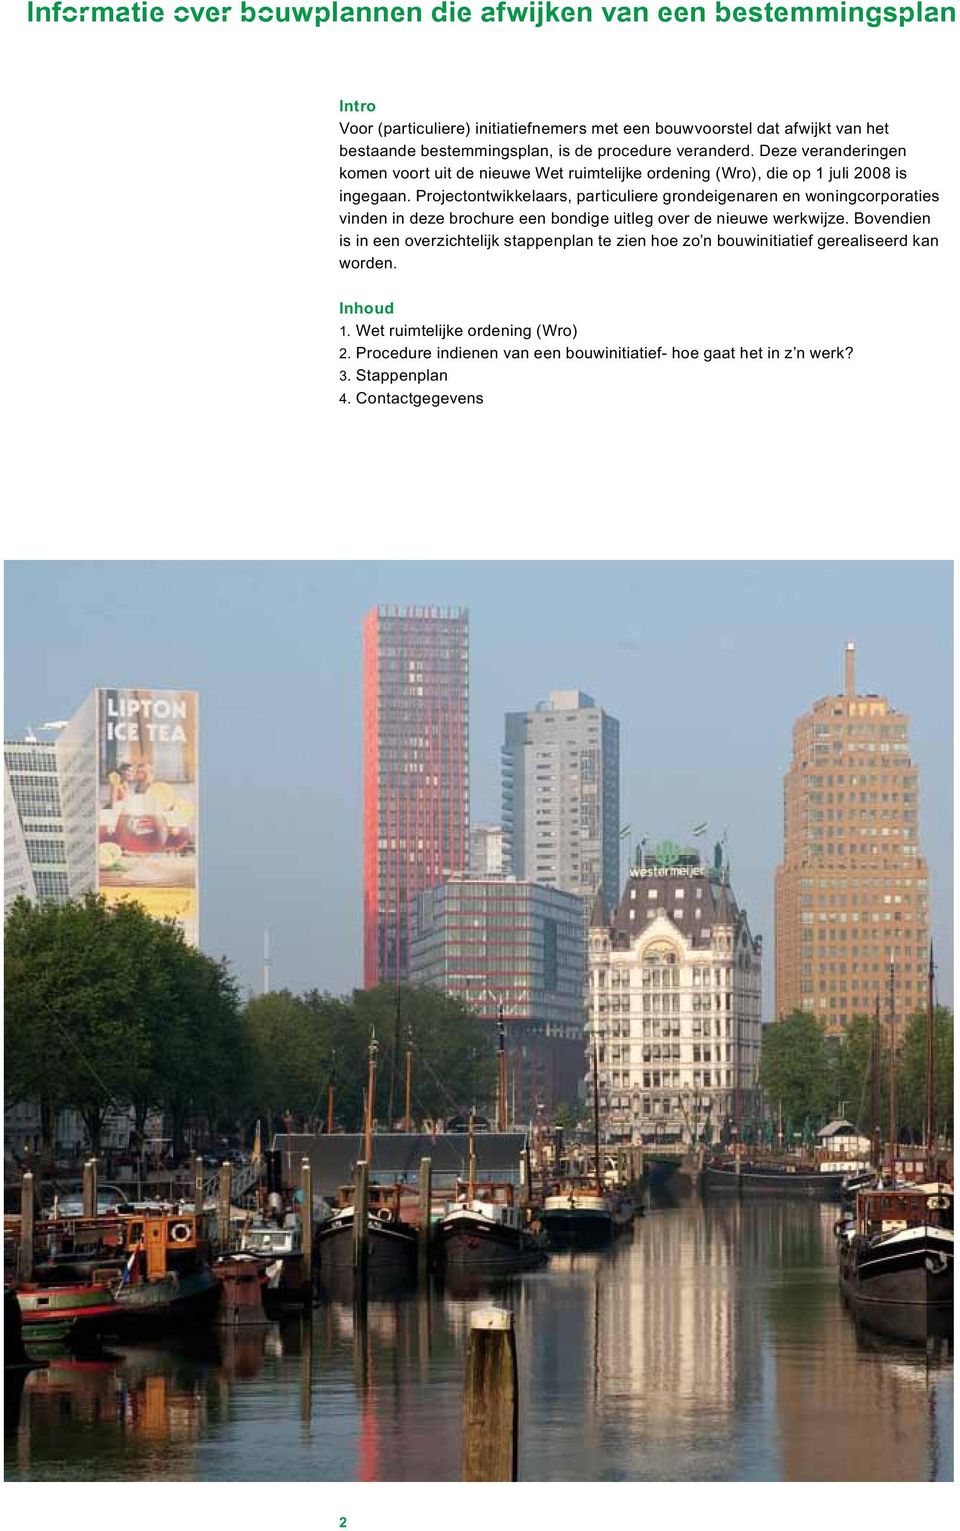 Projectontwikkelaars, particuliere grondeigenaren en woningcorporaties vinden in deze brochure een bondige uitleg over de nieuwe werkwijze.